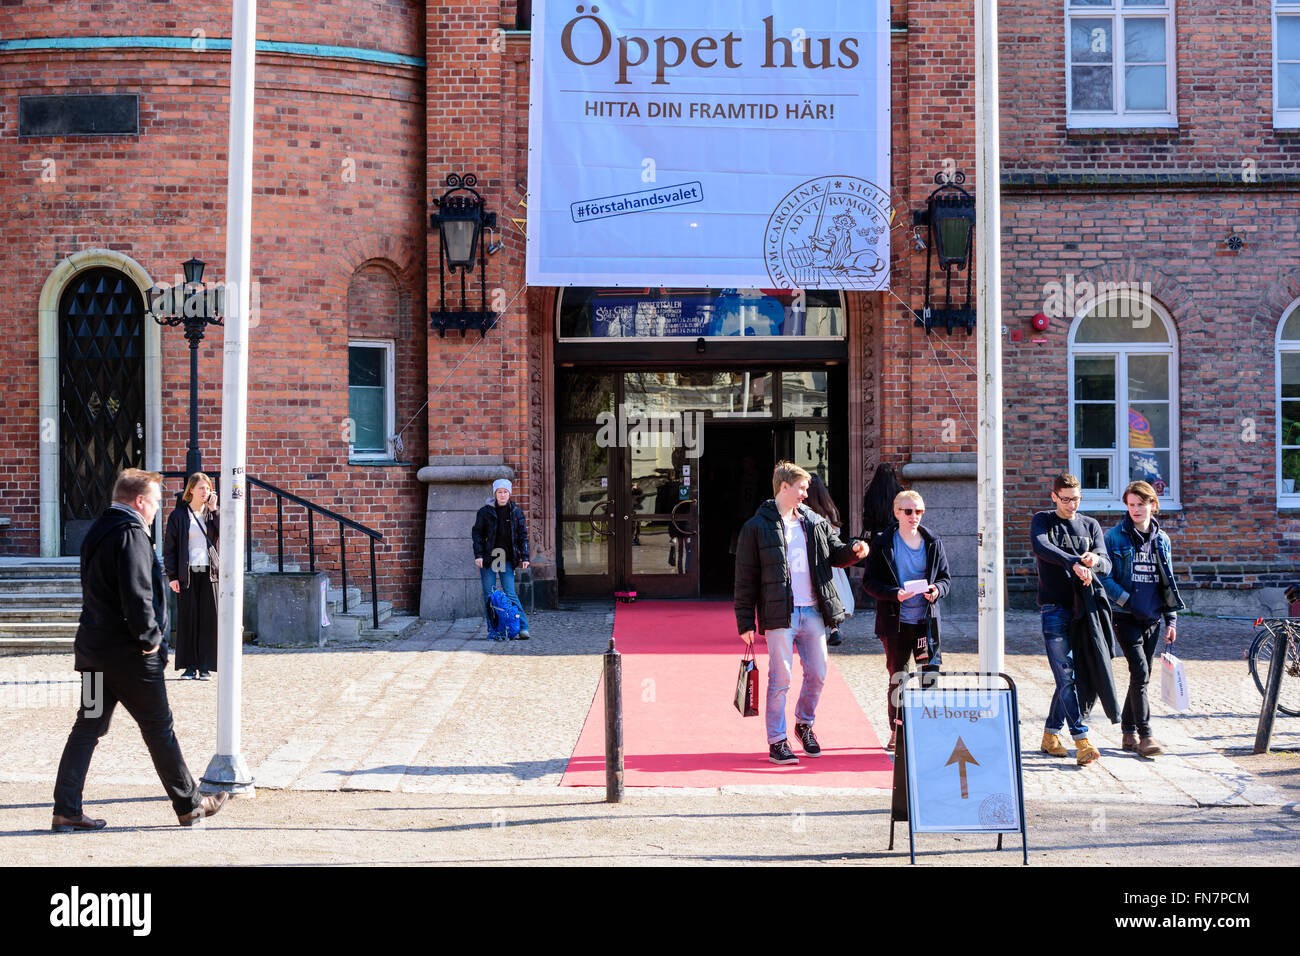 Lund, Schweden - 12. März 2016: Die Universität hat ein offenes Haus für neue Studierende. Hier ist der Eingang zu den Af-Borgen w Stockfoto